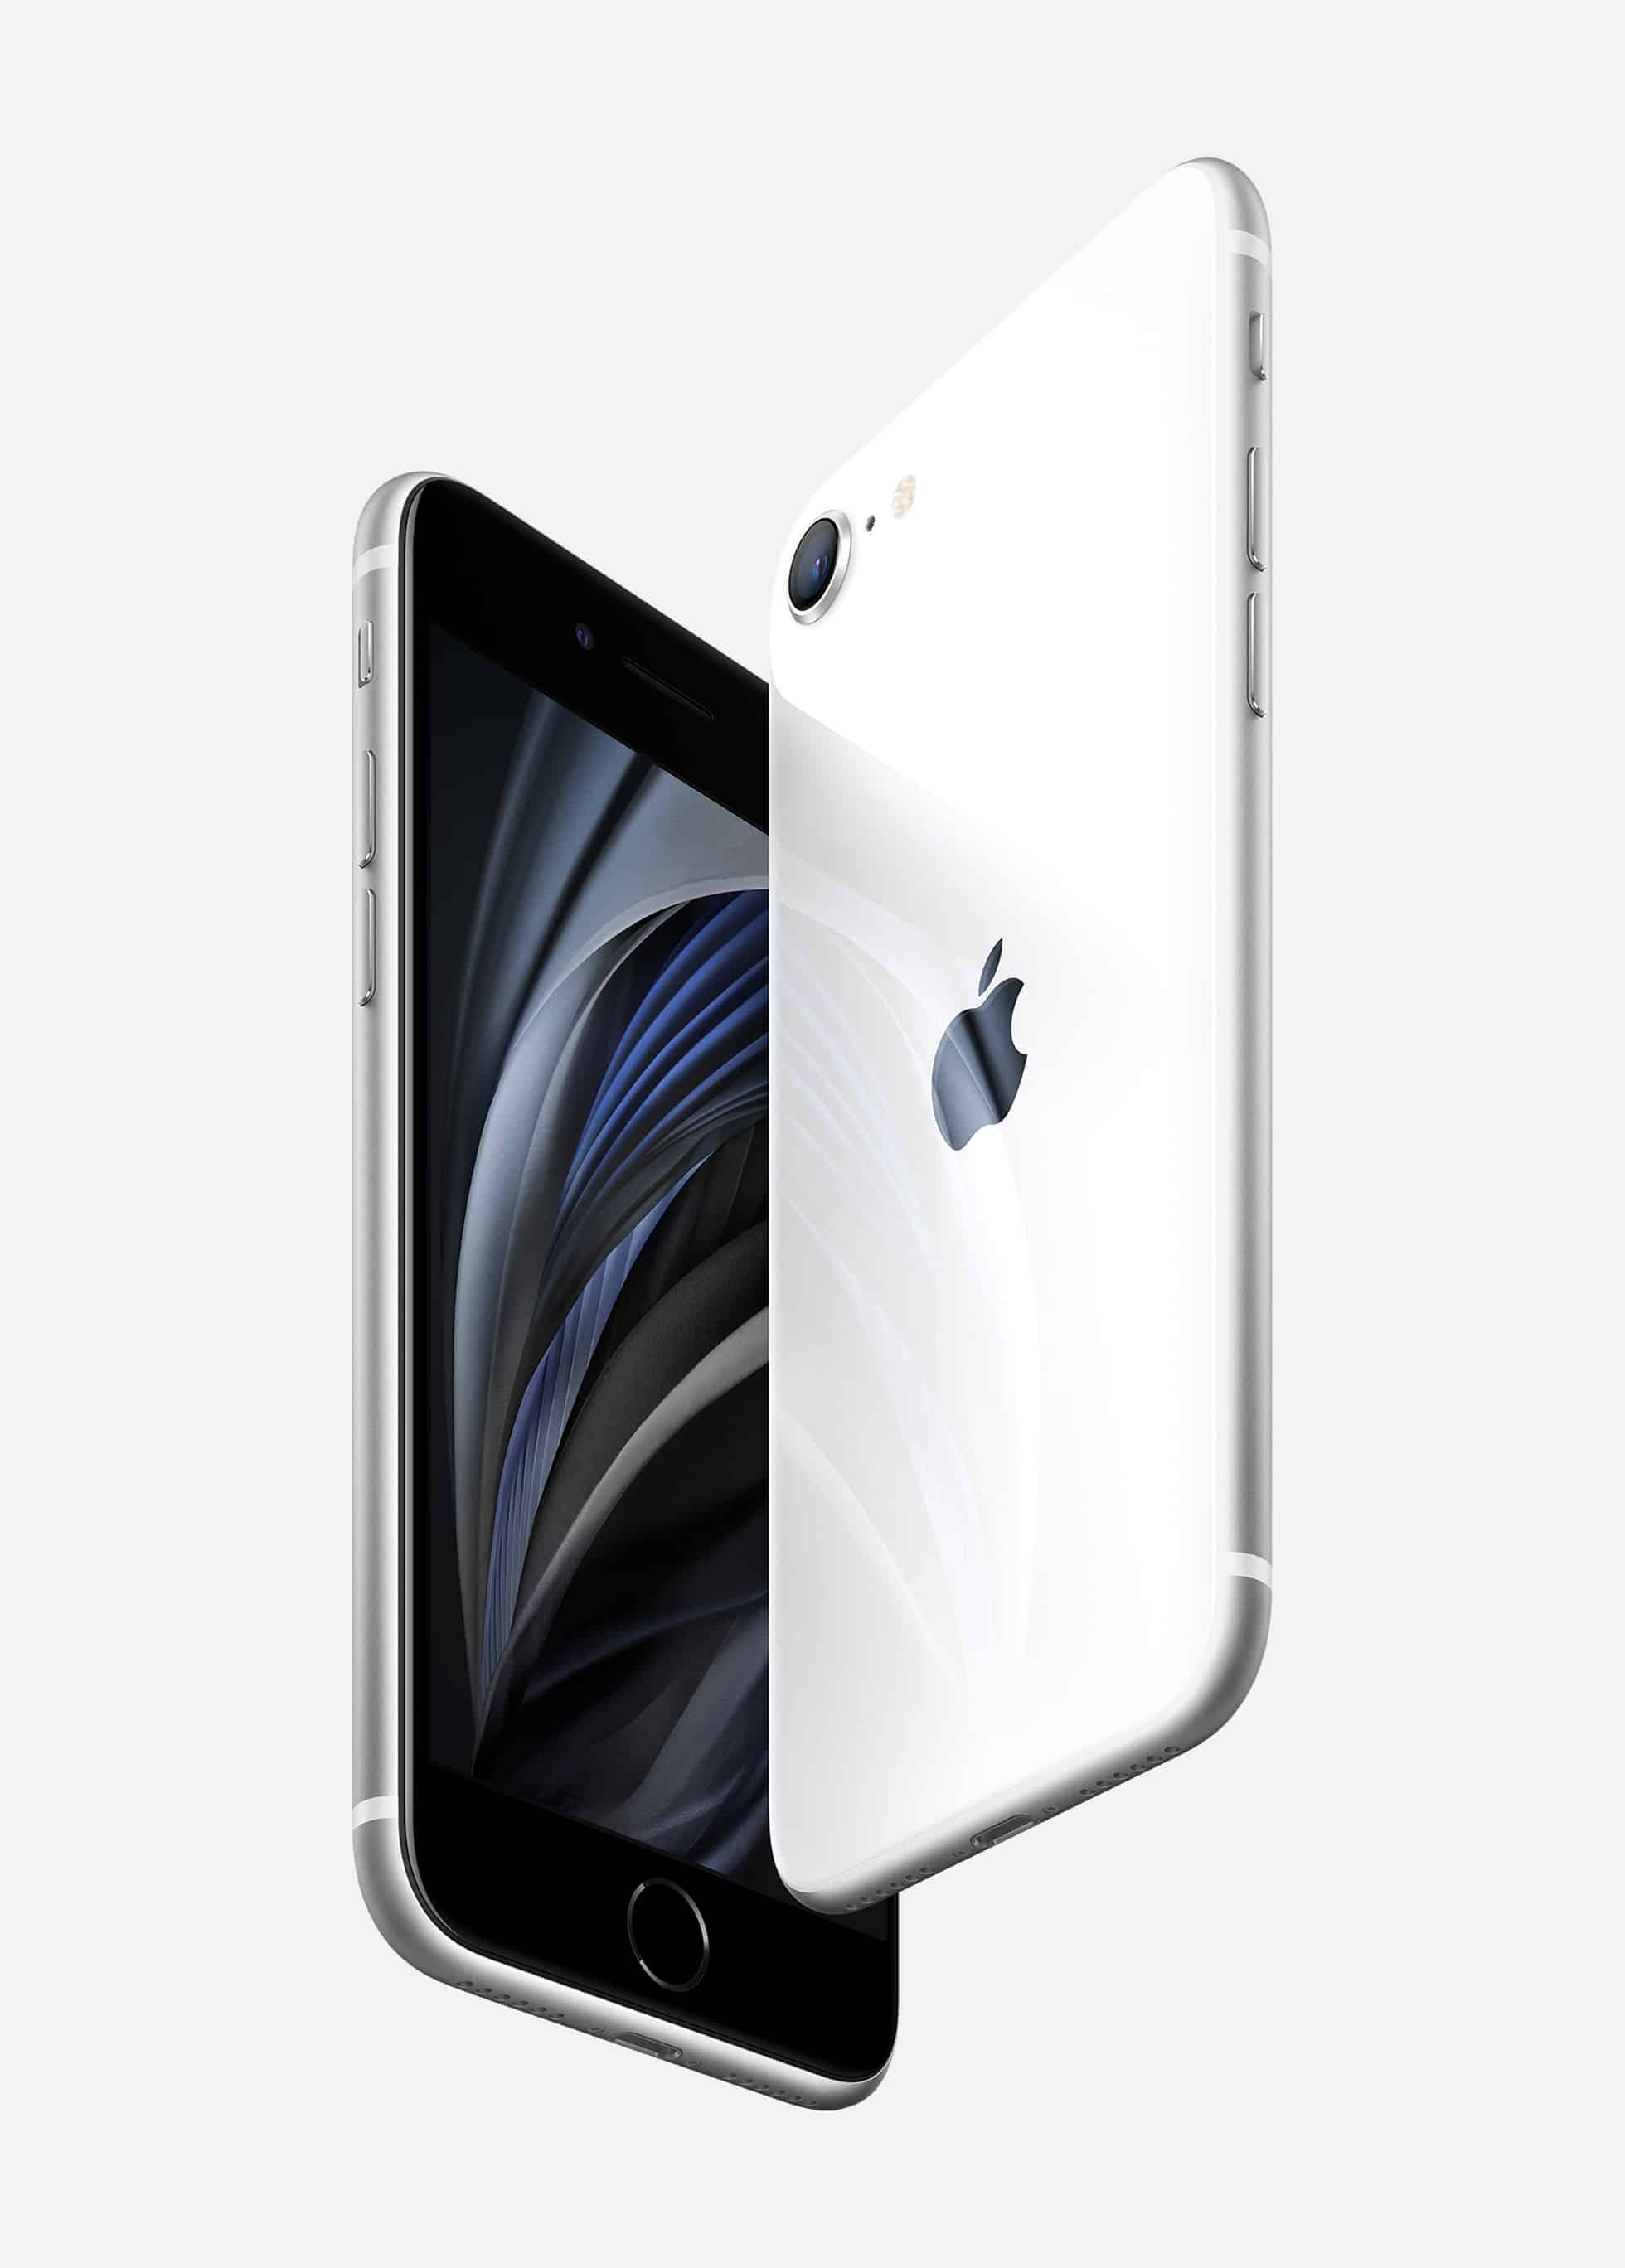 Yeni iPhone SE tanıtıldı: 4.7 inç ekran, A13 Bionic işlemci